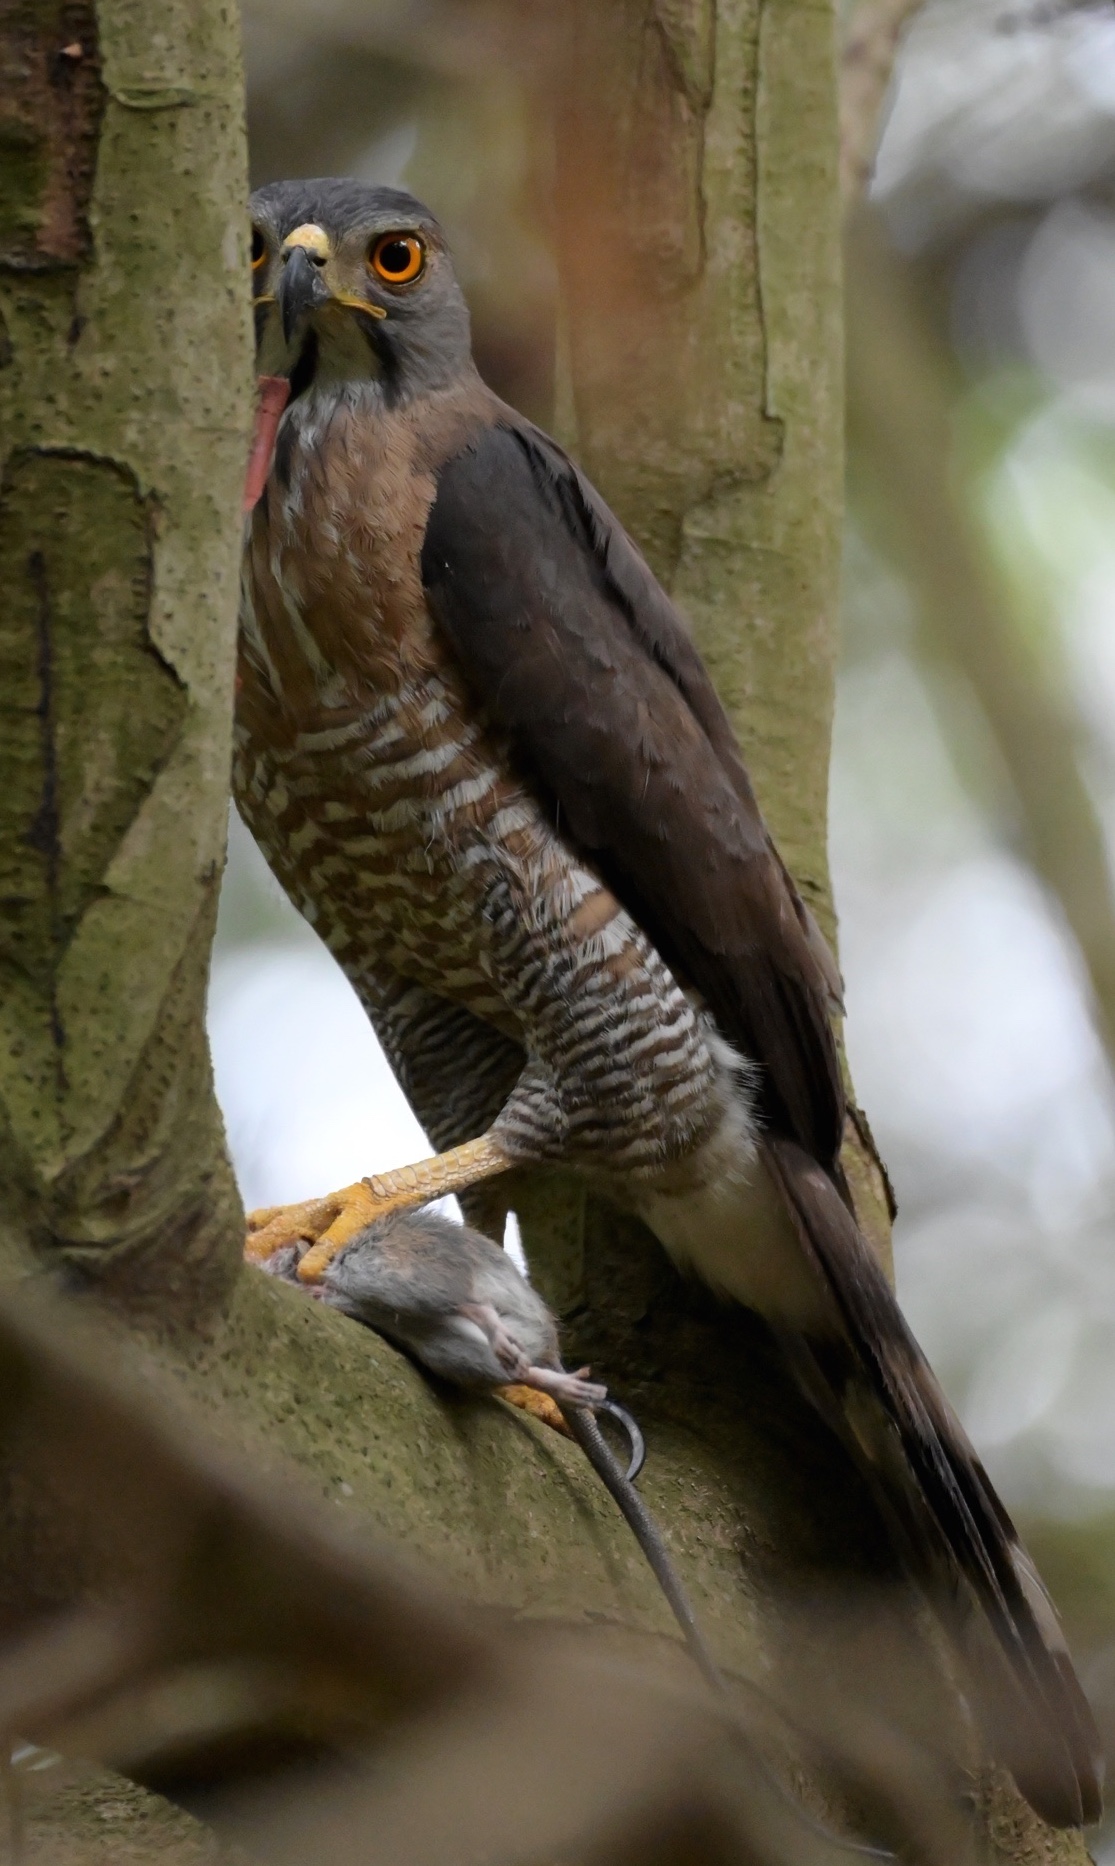 凤头苍鹰的公母鸟外型相似 但母鸟体型较大